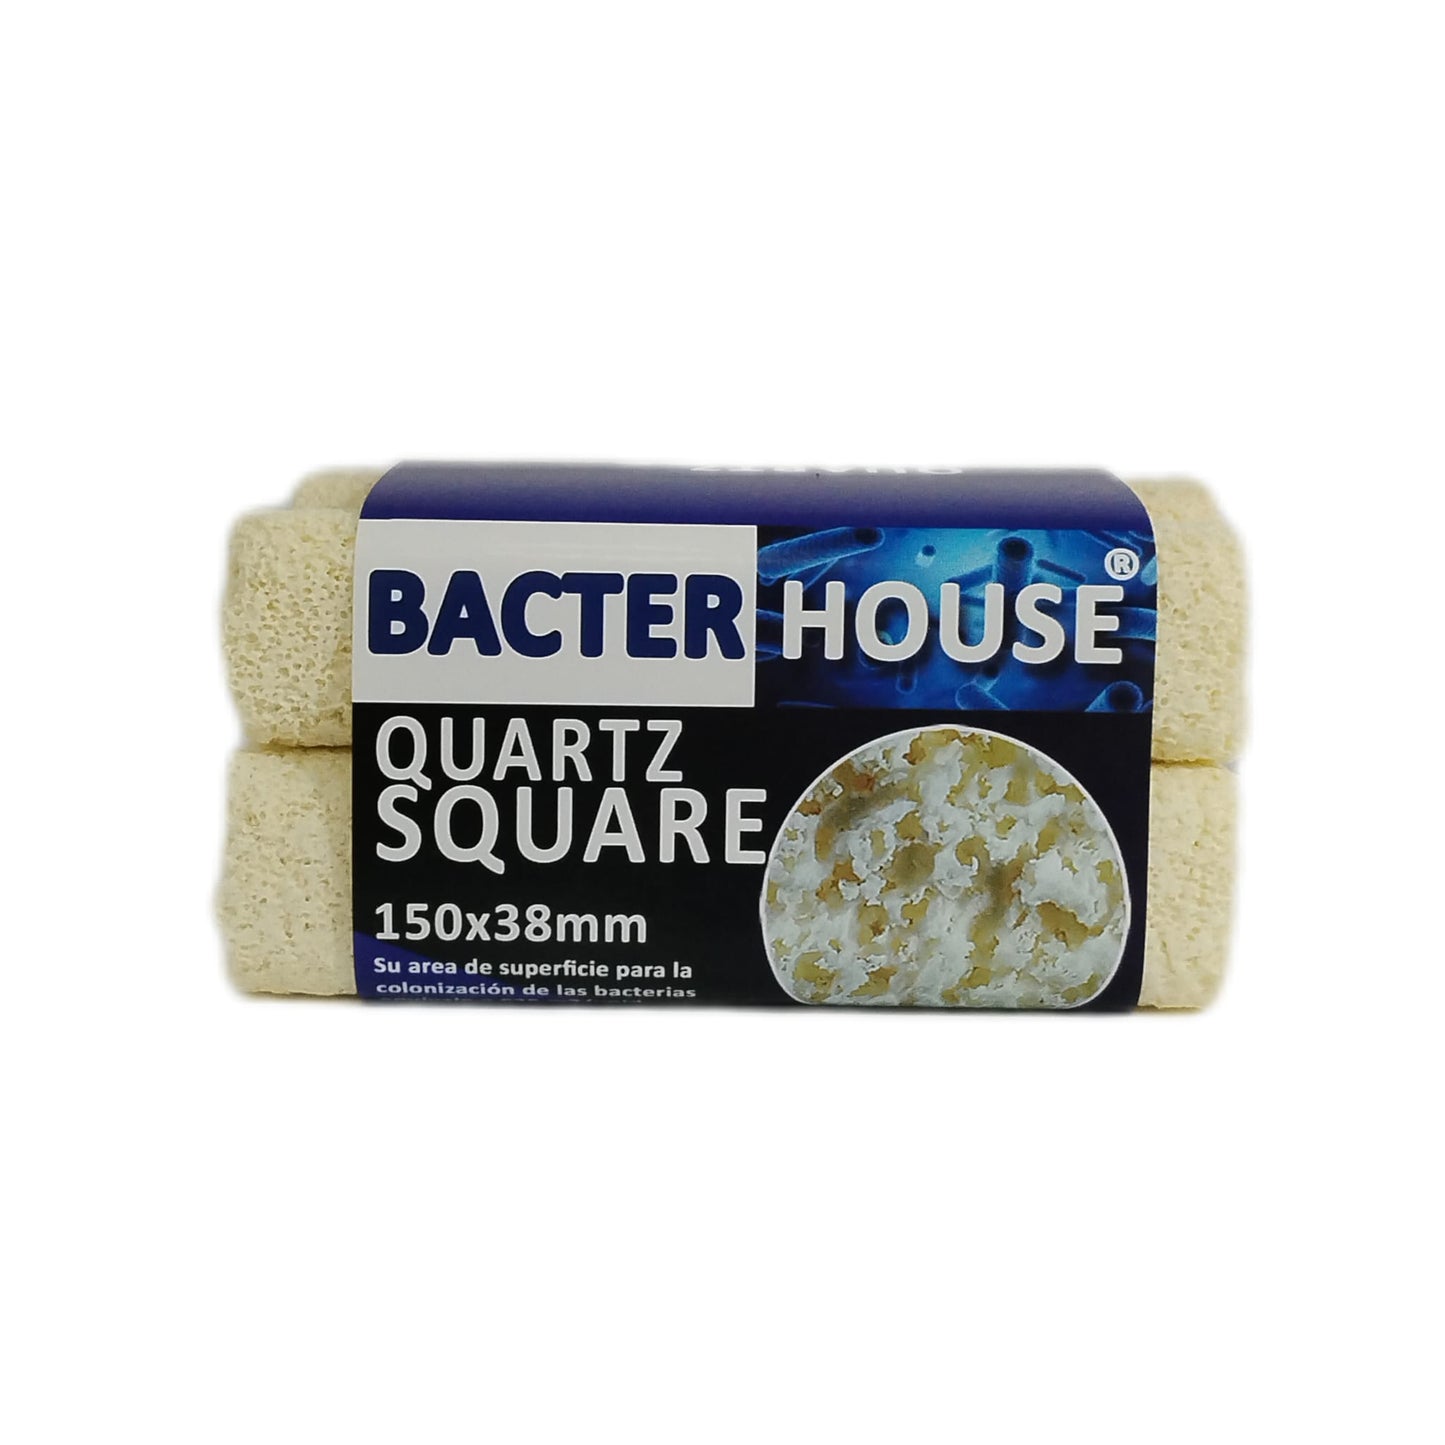 Bacterhouse Quartz Square 150x38mm